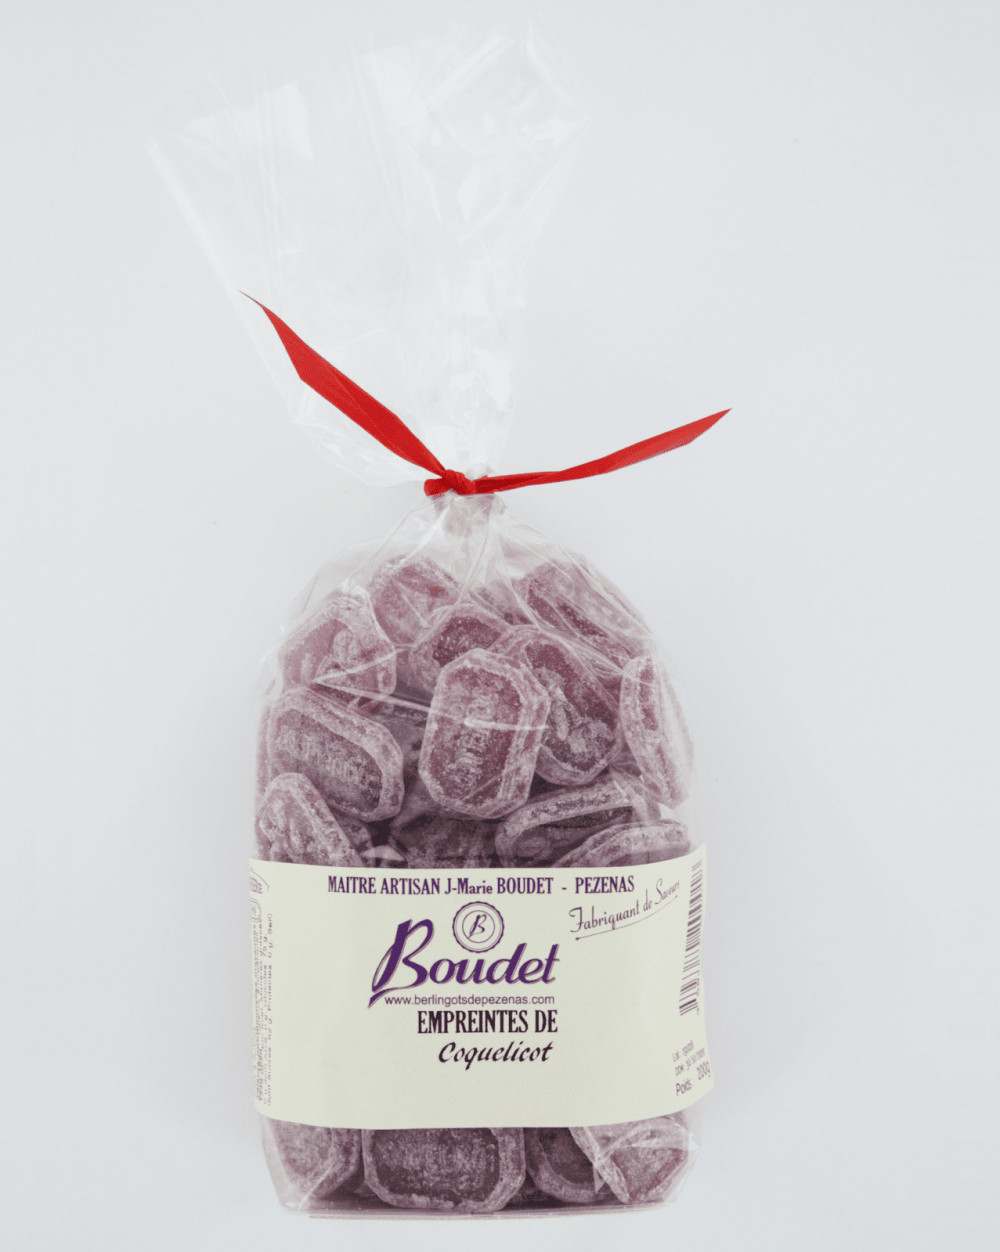 Bonbons Verres Violette - Boudet 